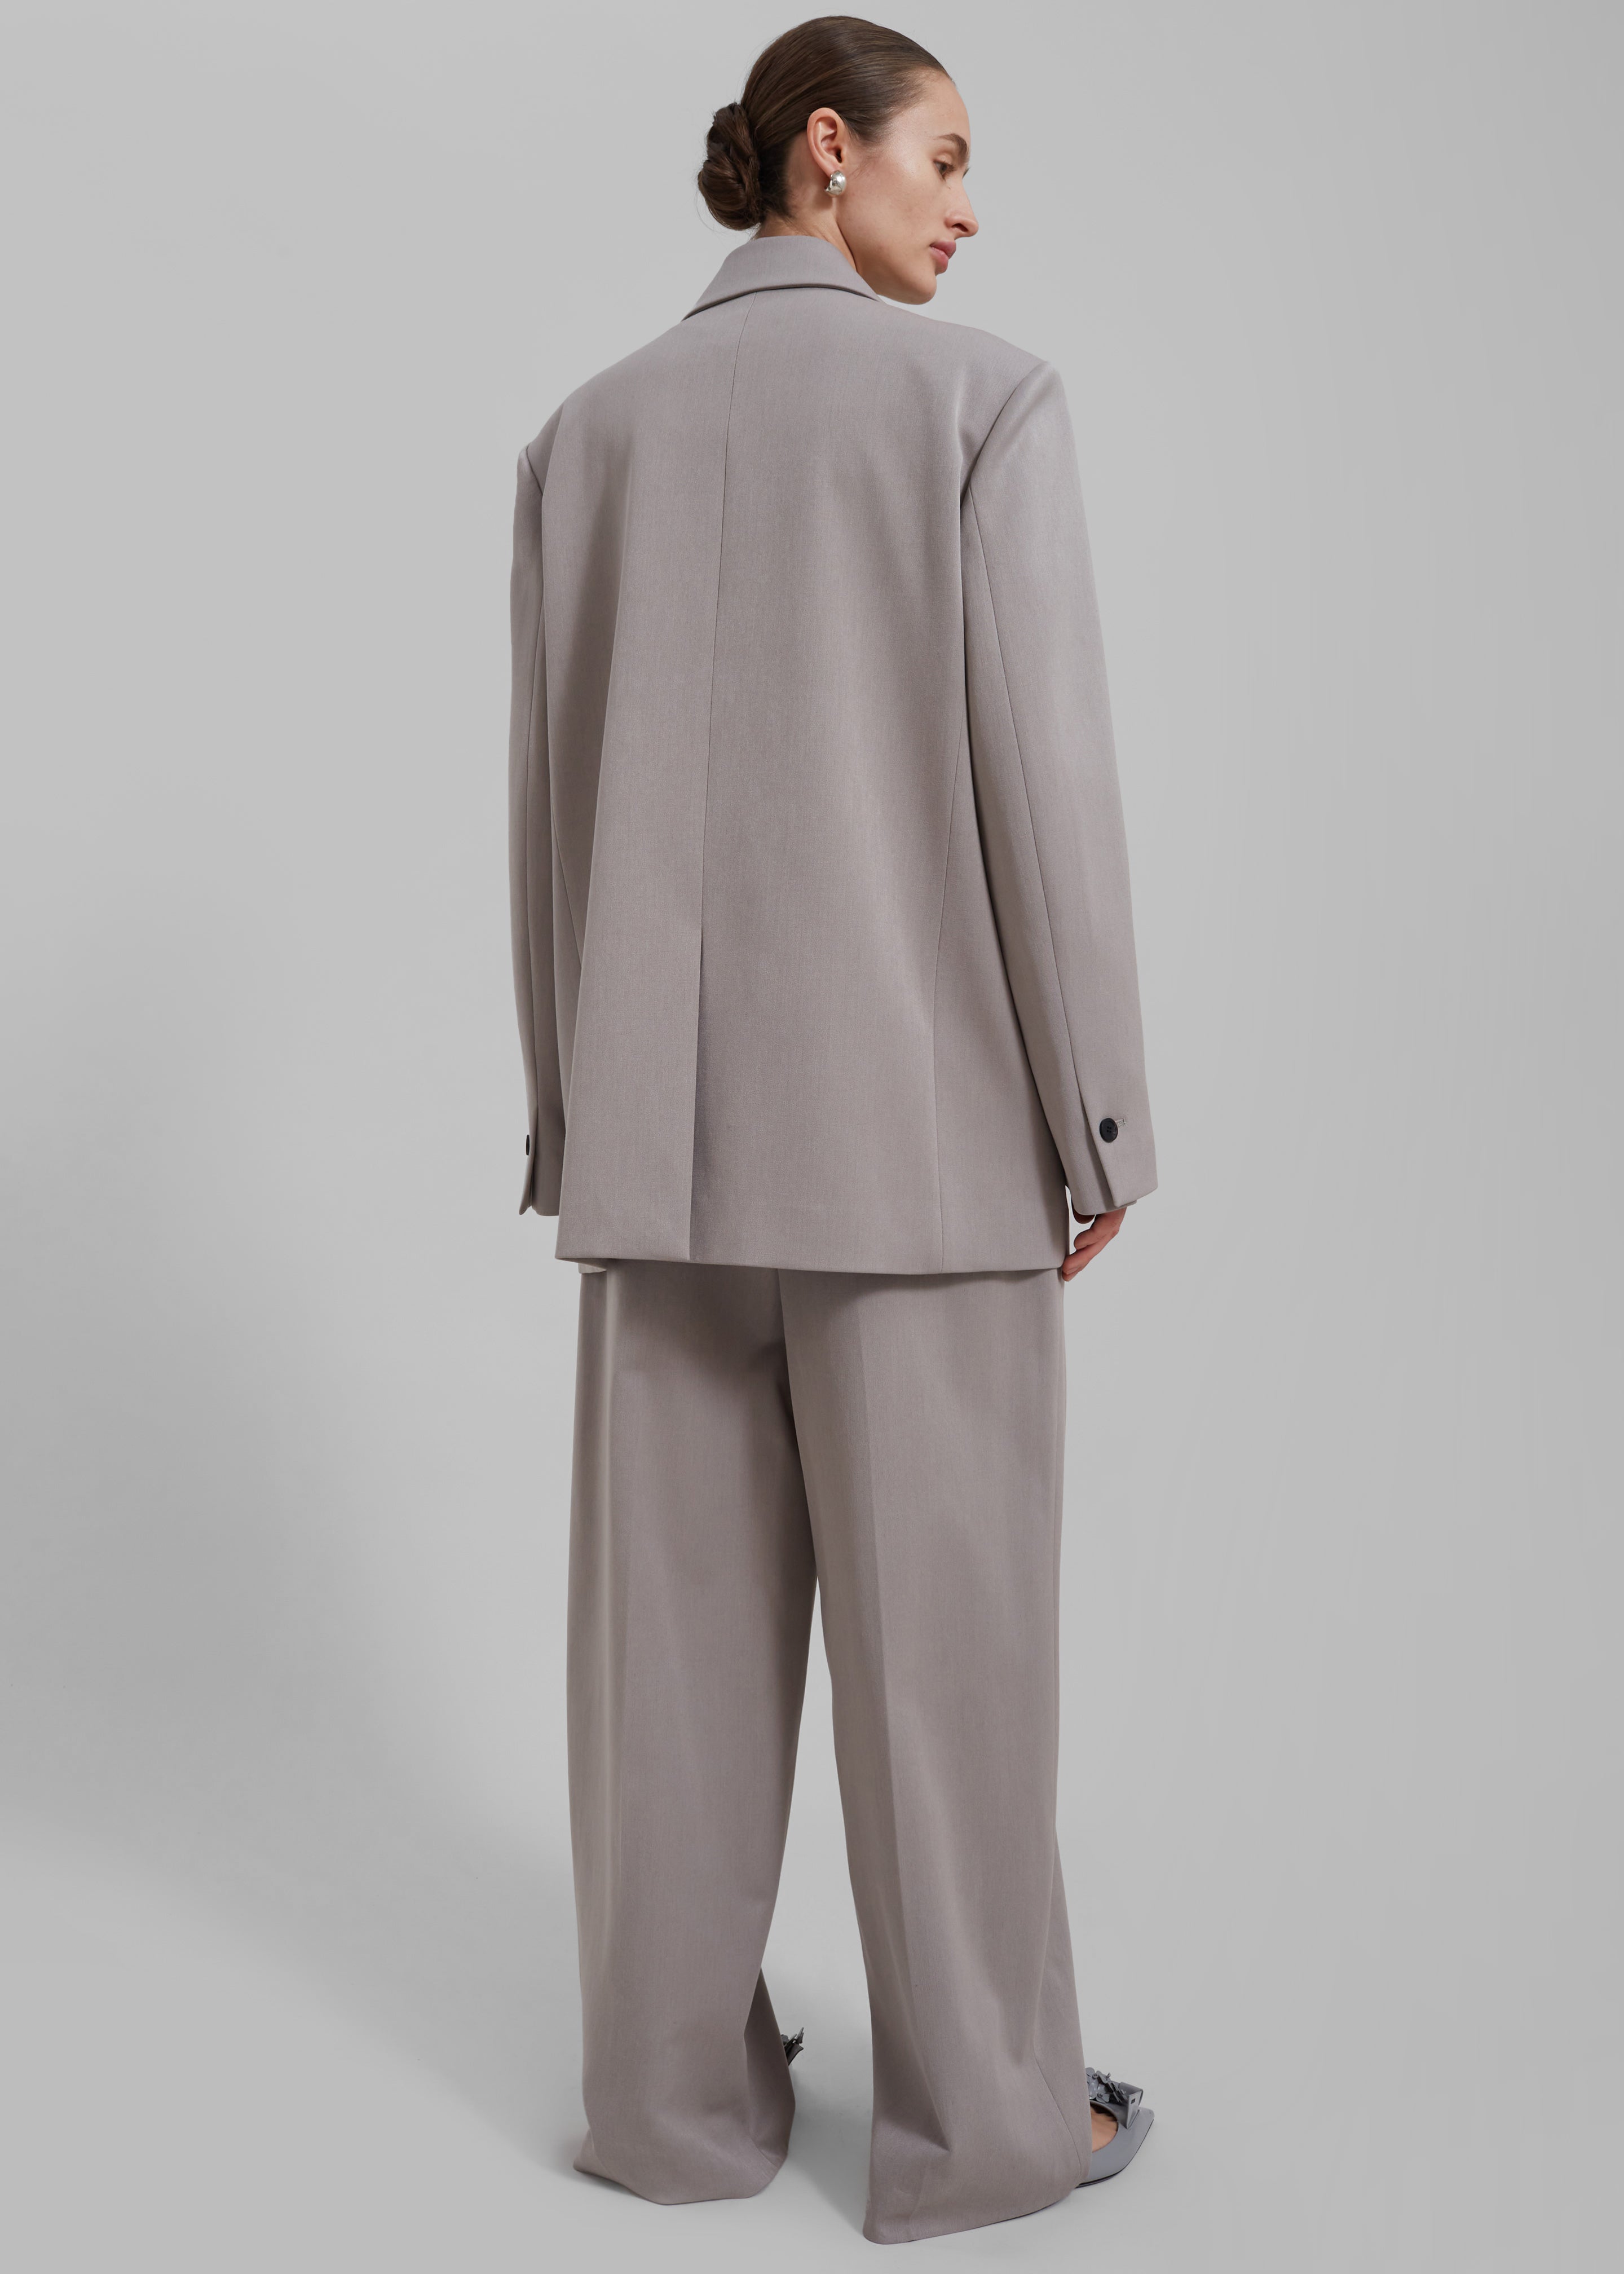 Adair Trousers - Grey - 8